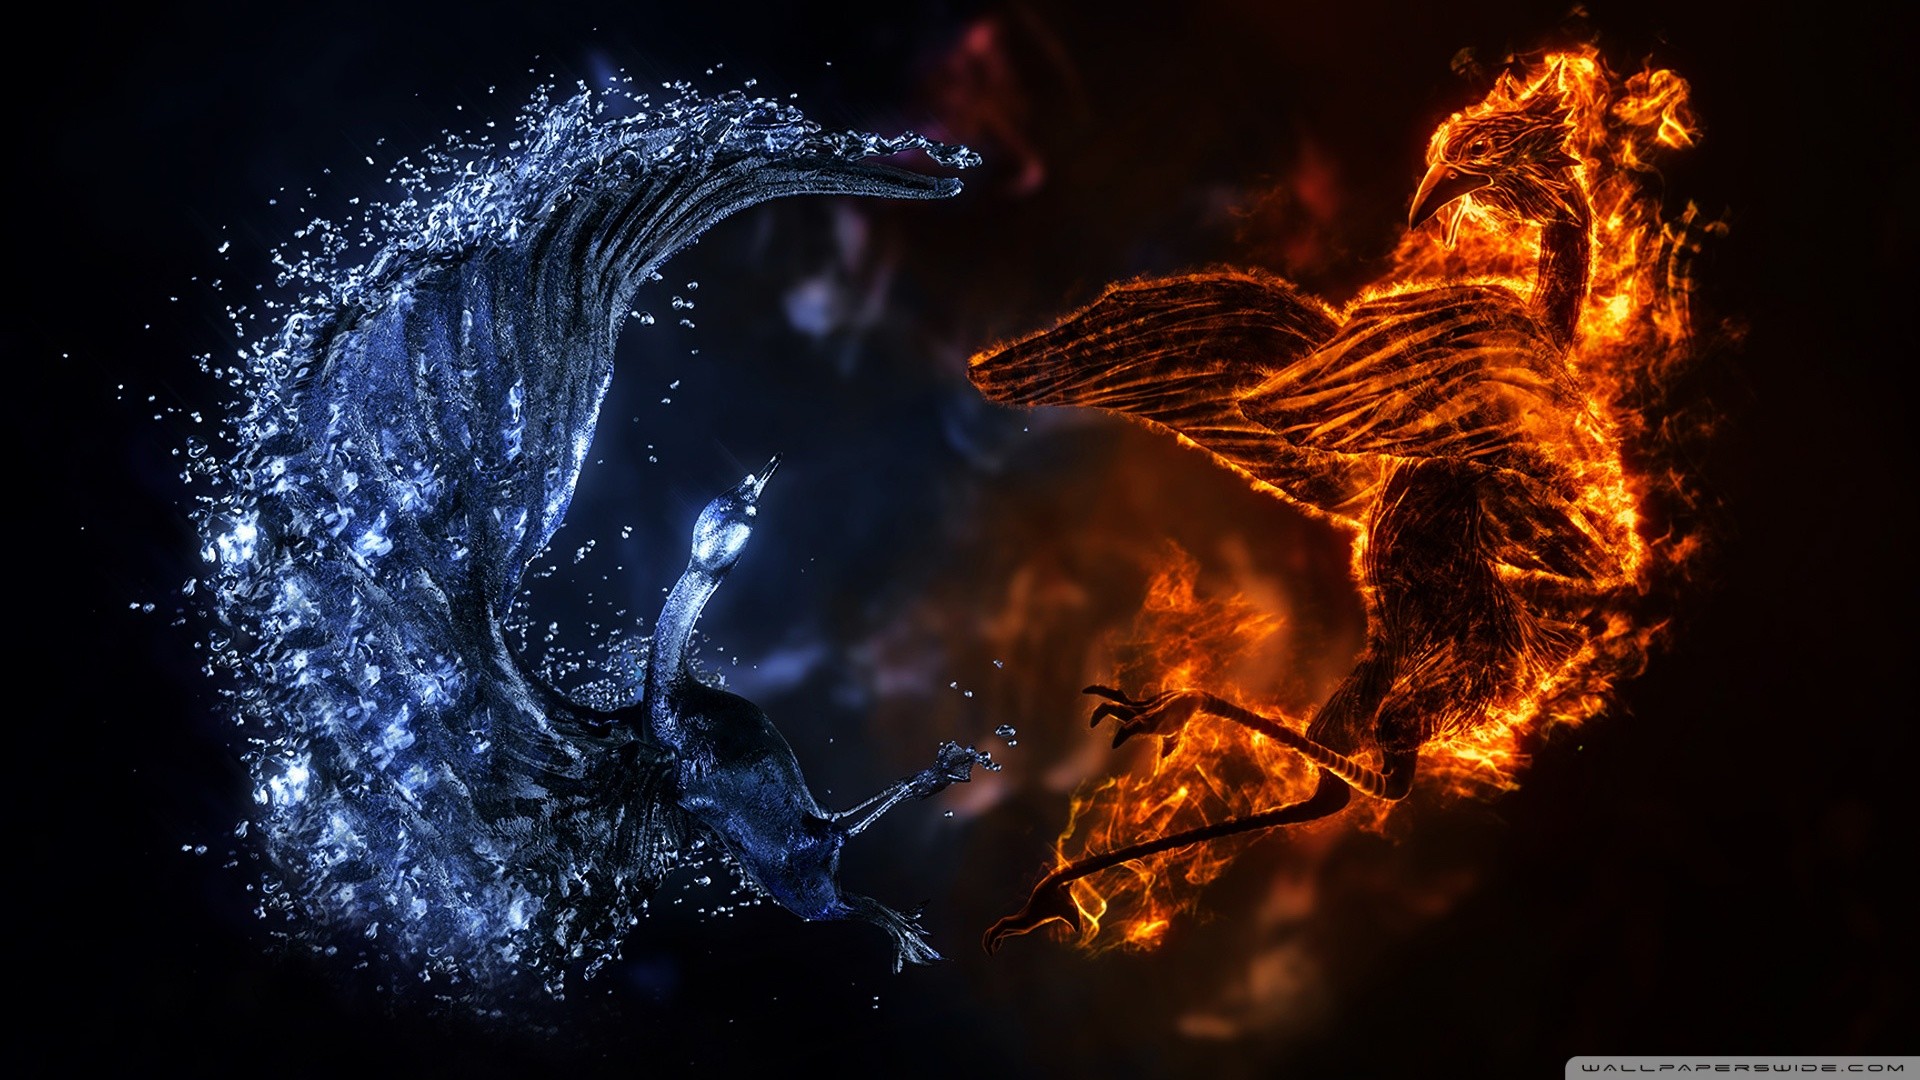 Abstract Fire Horse Wallpaper - Fire Bird Vs Water Bird , HD Wallpaper & Backgrounds